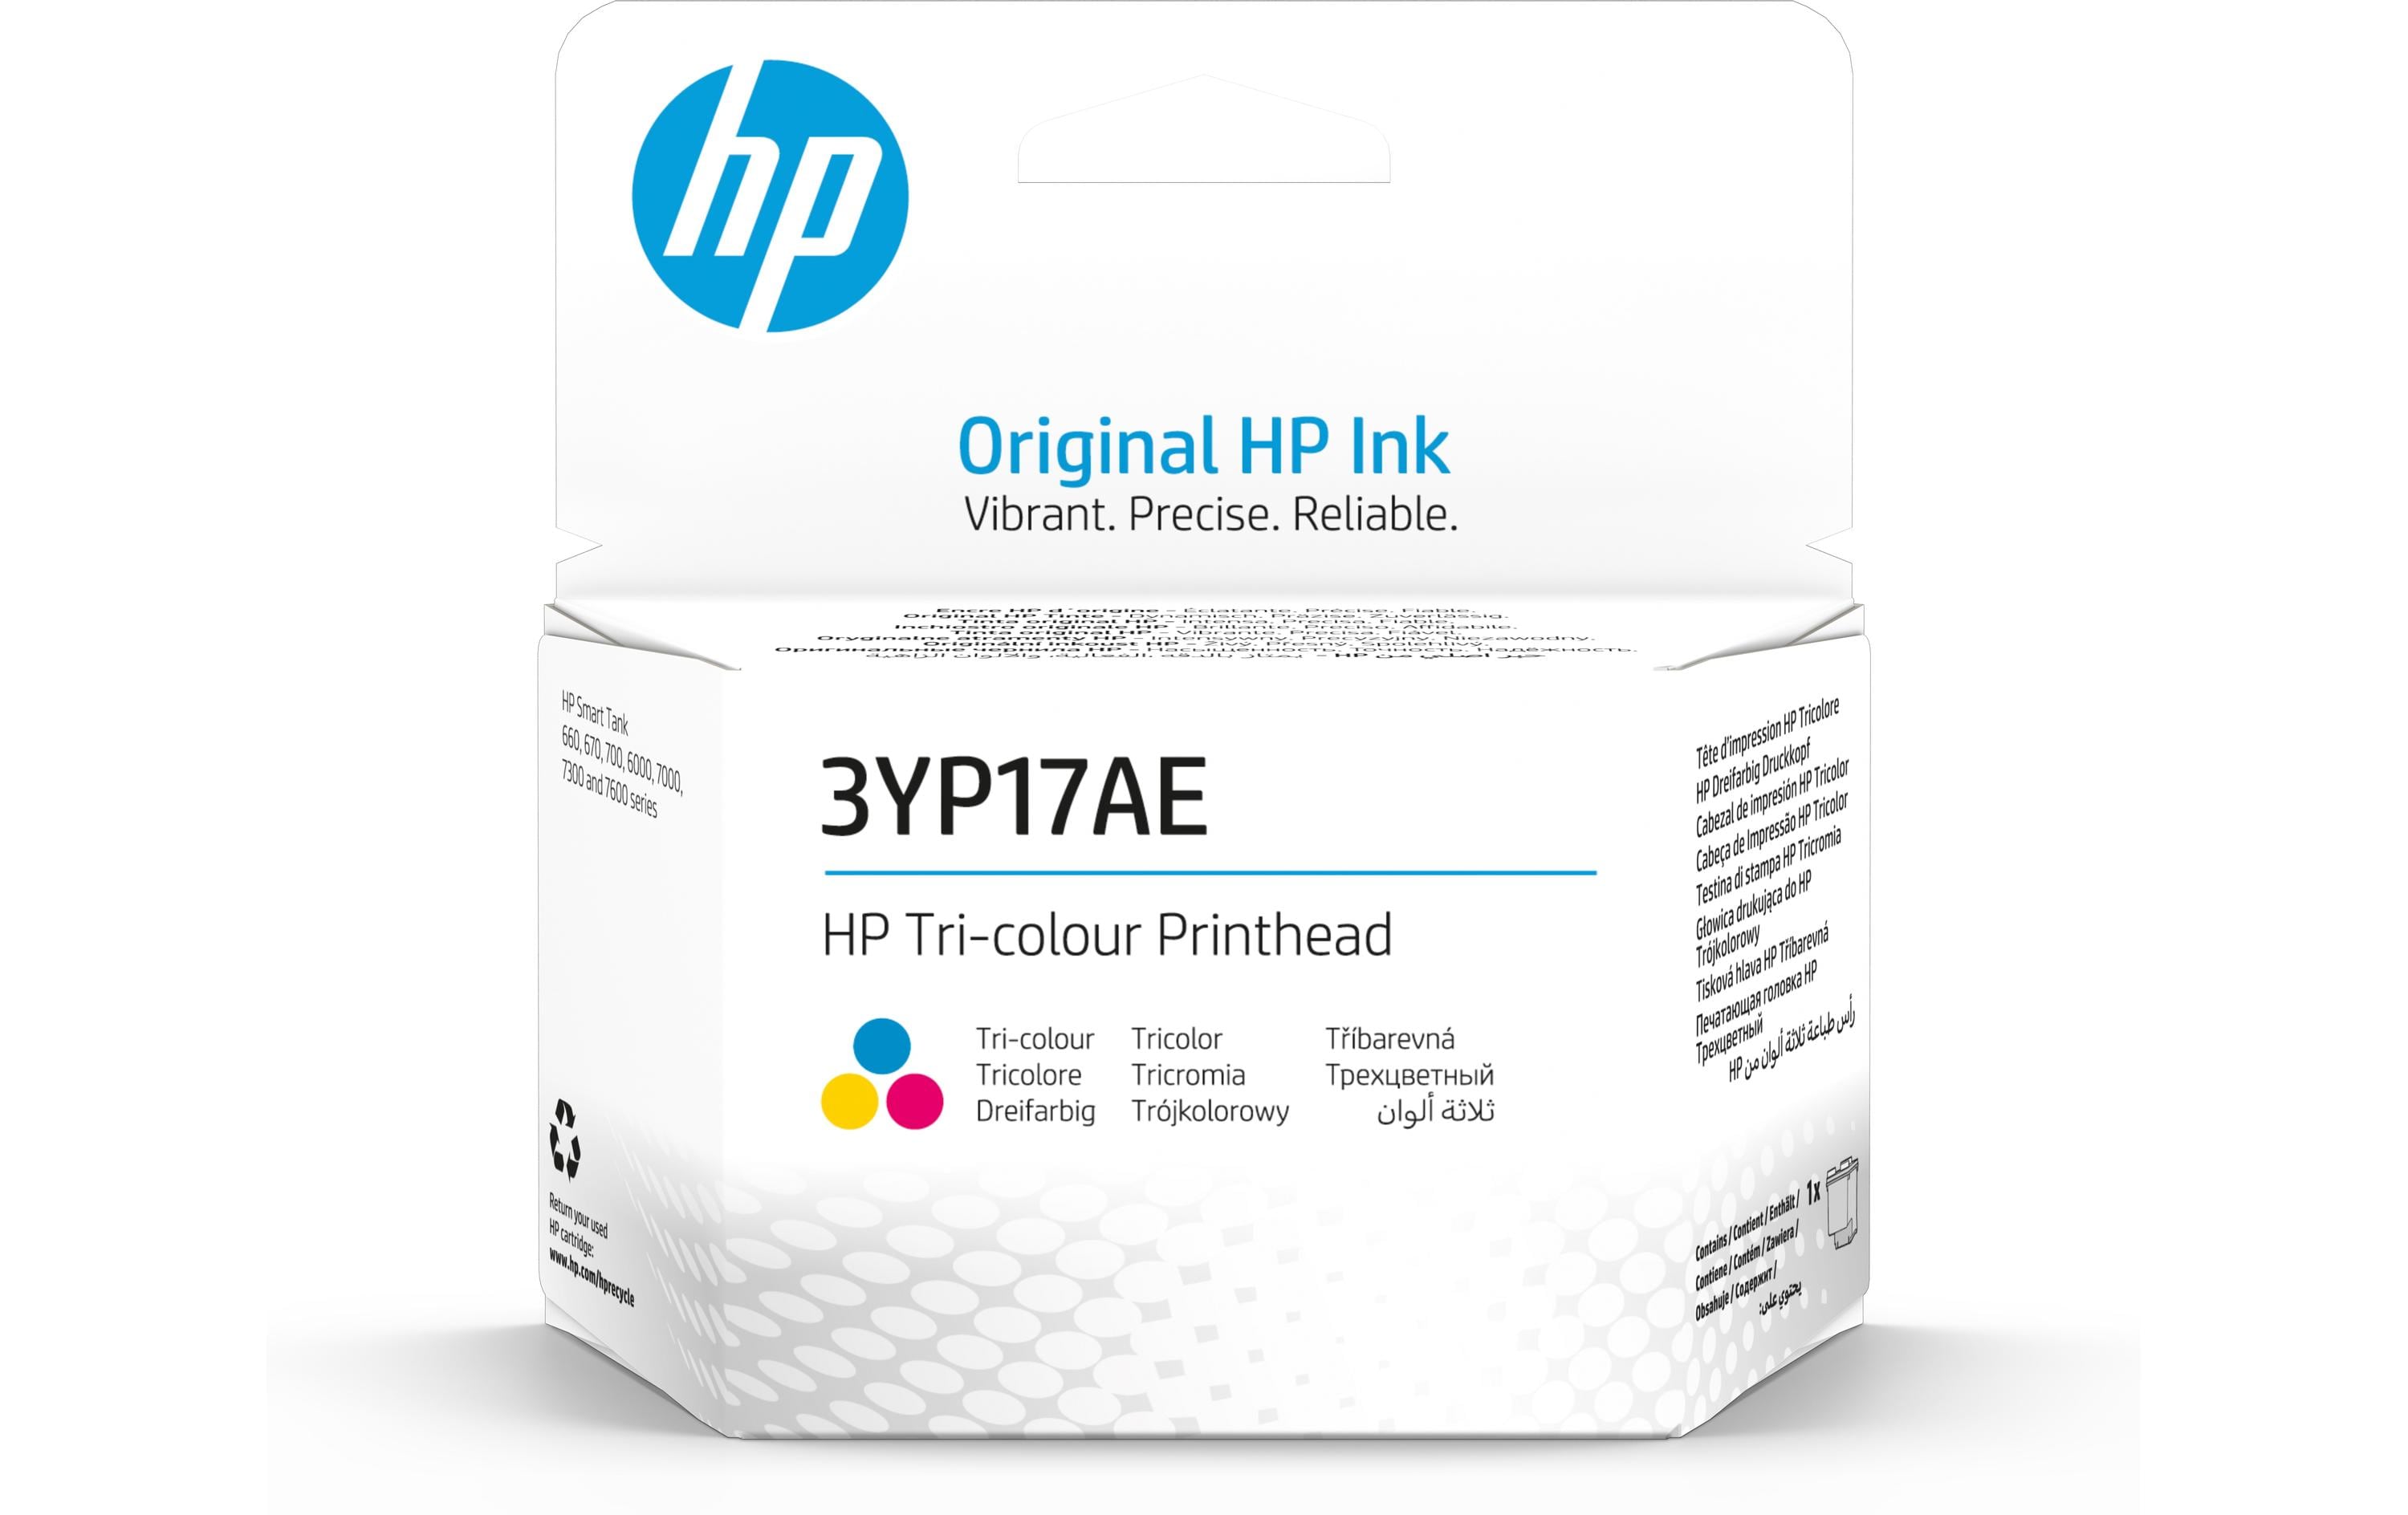 HP Druckkopf 3YP17AE Dreifarbig Color